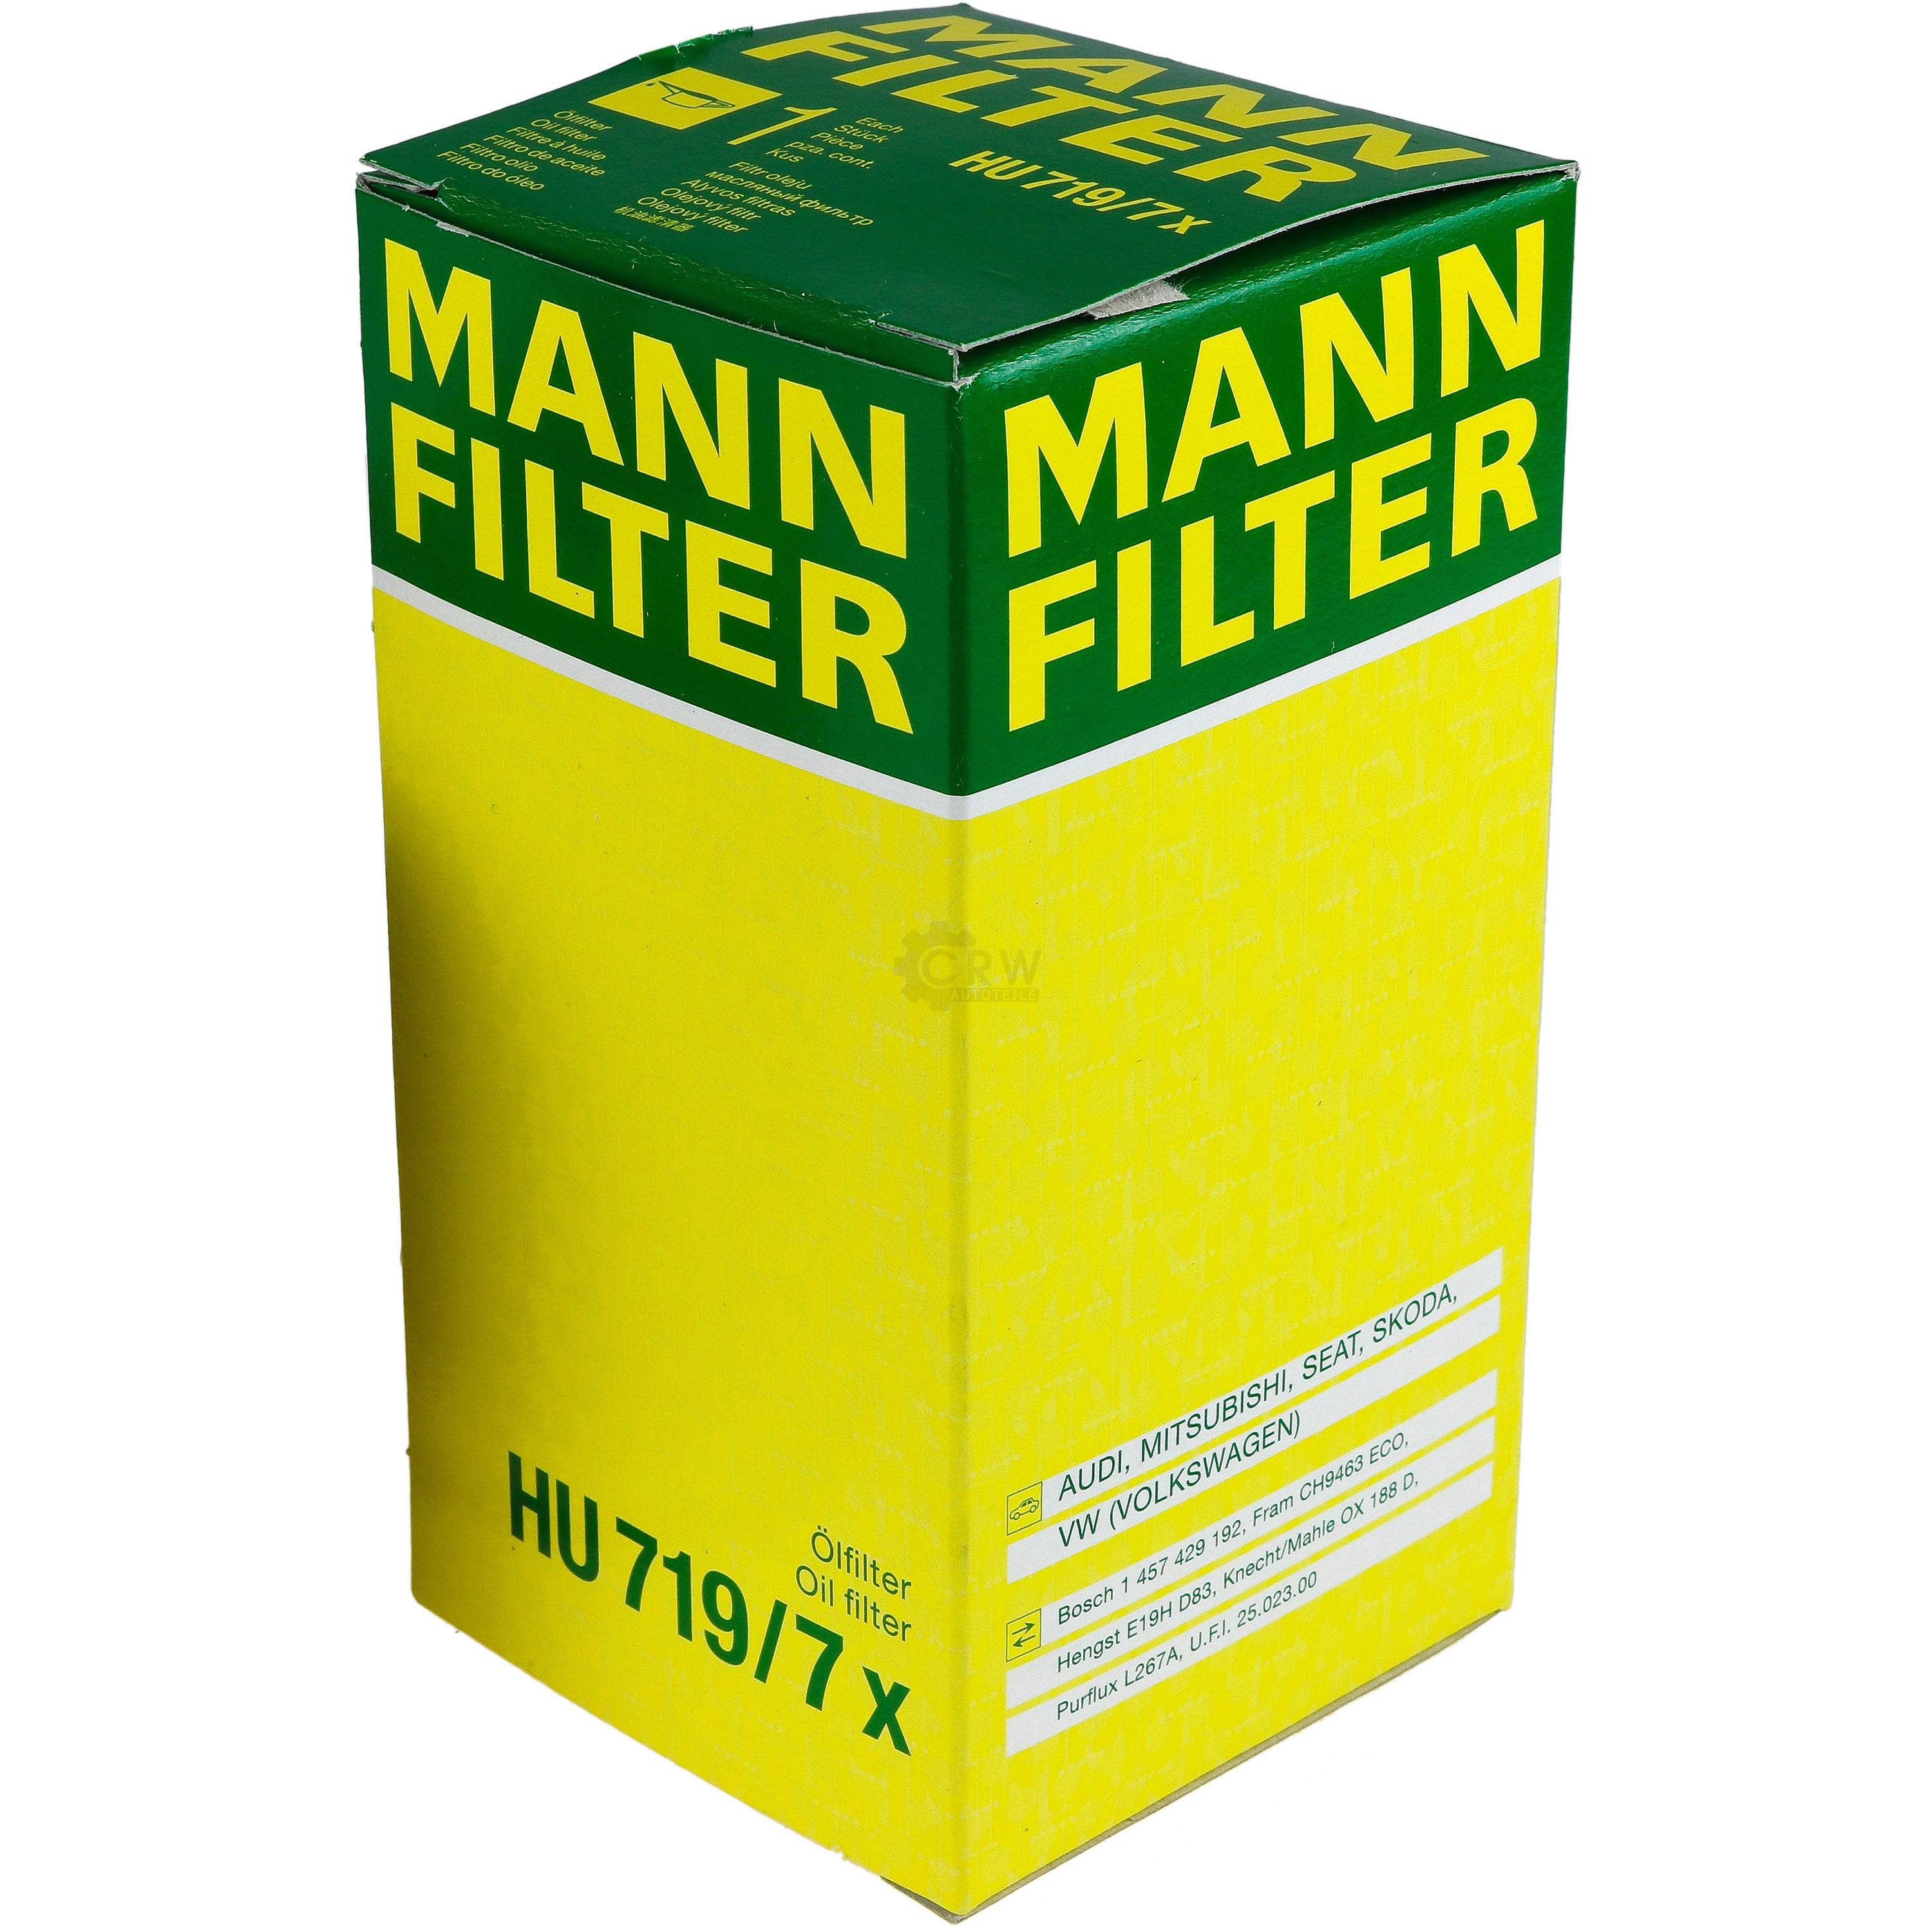 MANN-FILTER Ölfilter HU 719/7 x Oil Filter